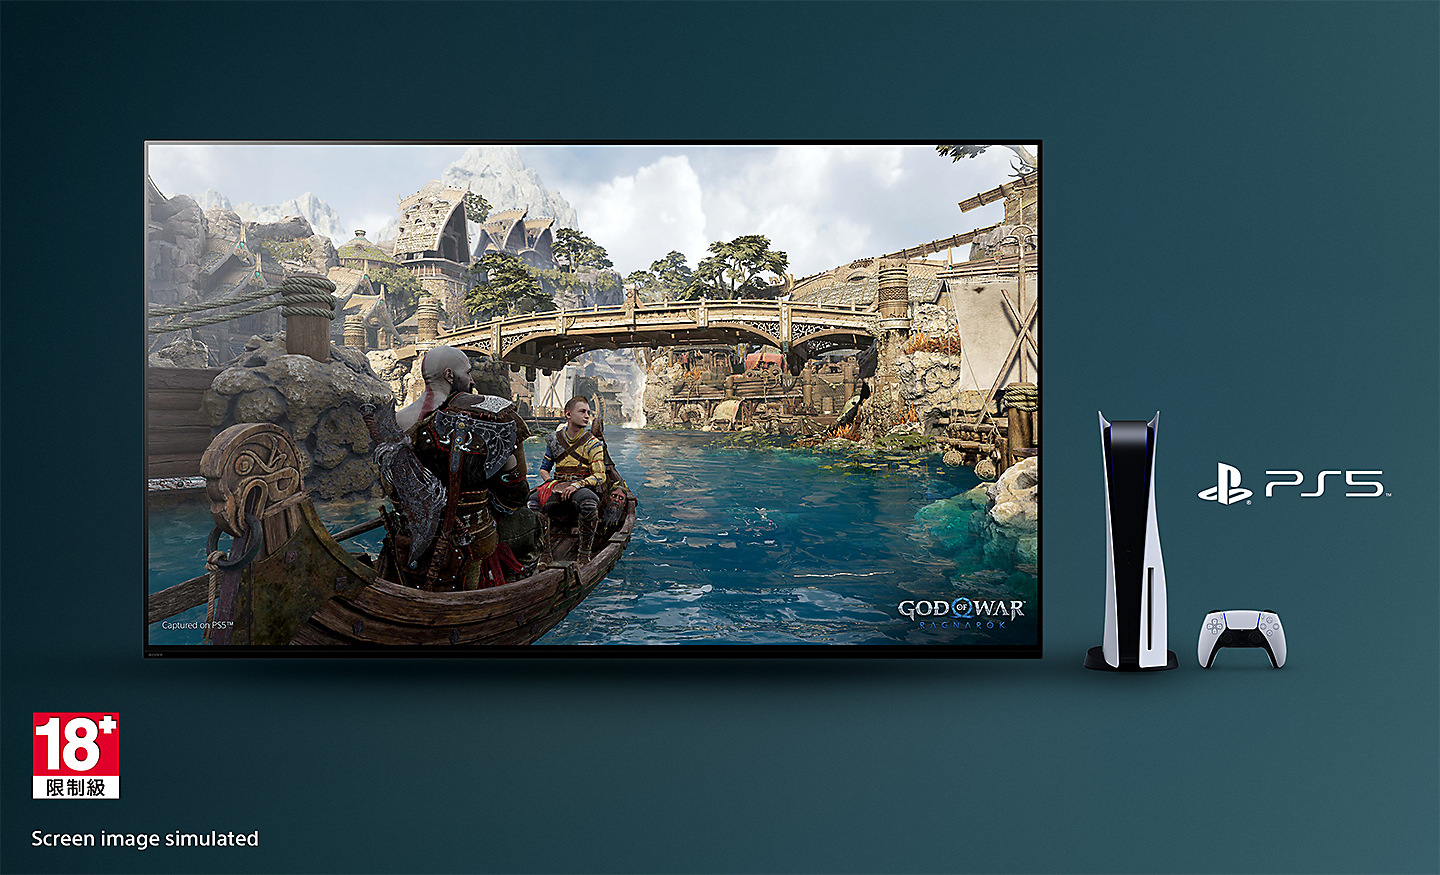 BRAVIA TV 的螢幕上是《戰神：諸神黃昏》的遊戲畫面，可看到河上的一艘船和背景的橋，電視右側是 PS5™ 主機、控制器和 PS5™ 標誌，左下角是 18+ 標誌